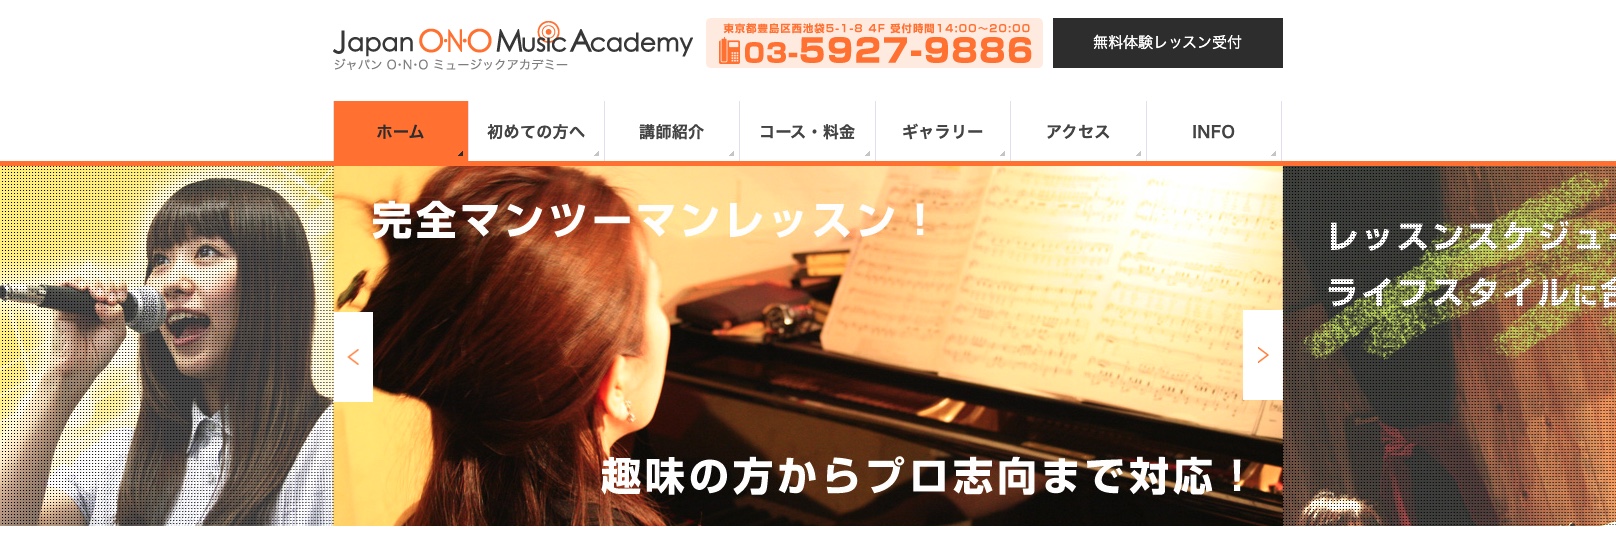 ジャパンO・N・Oミュージックアカデミー